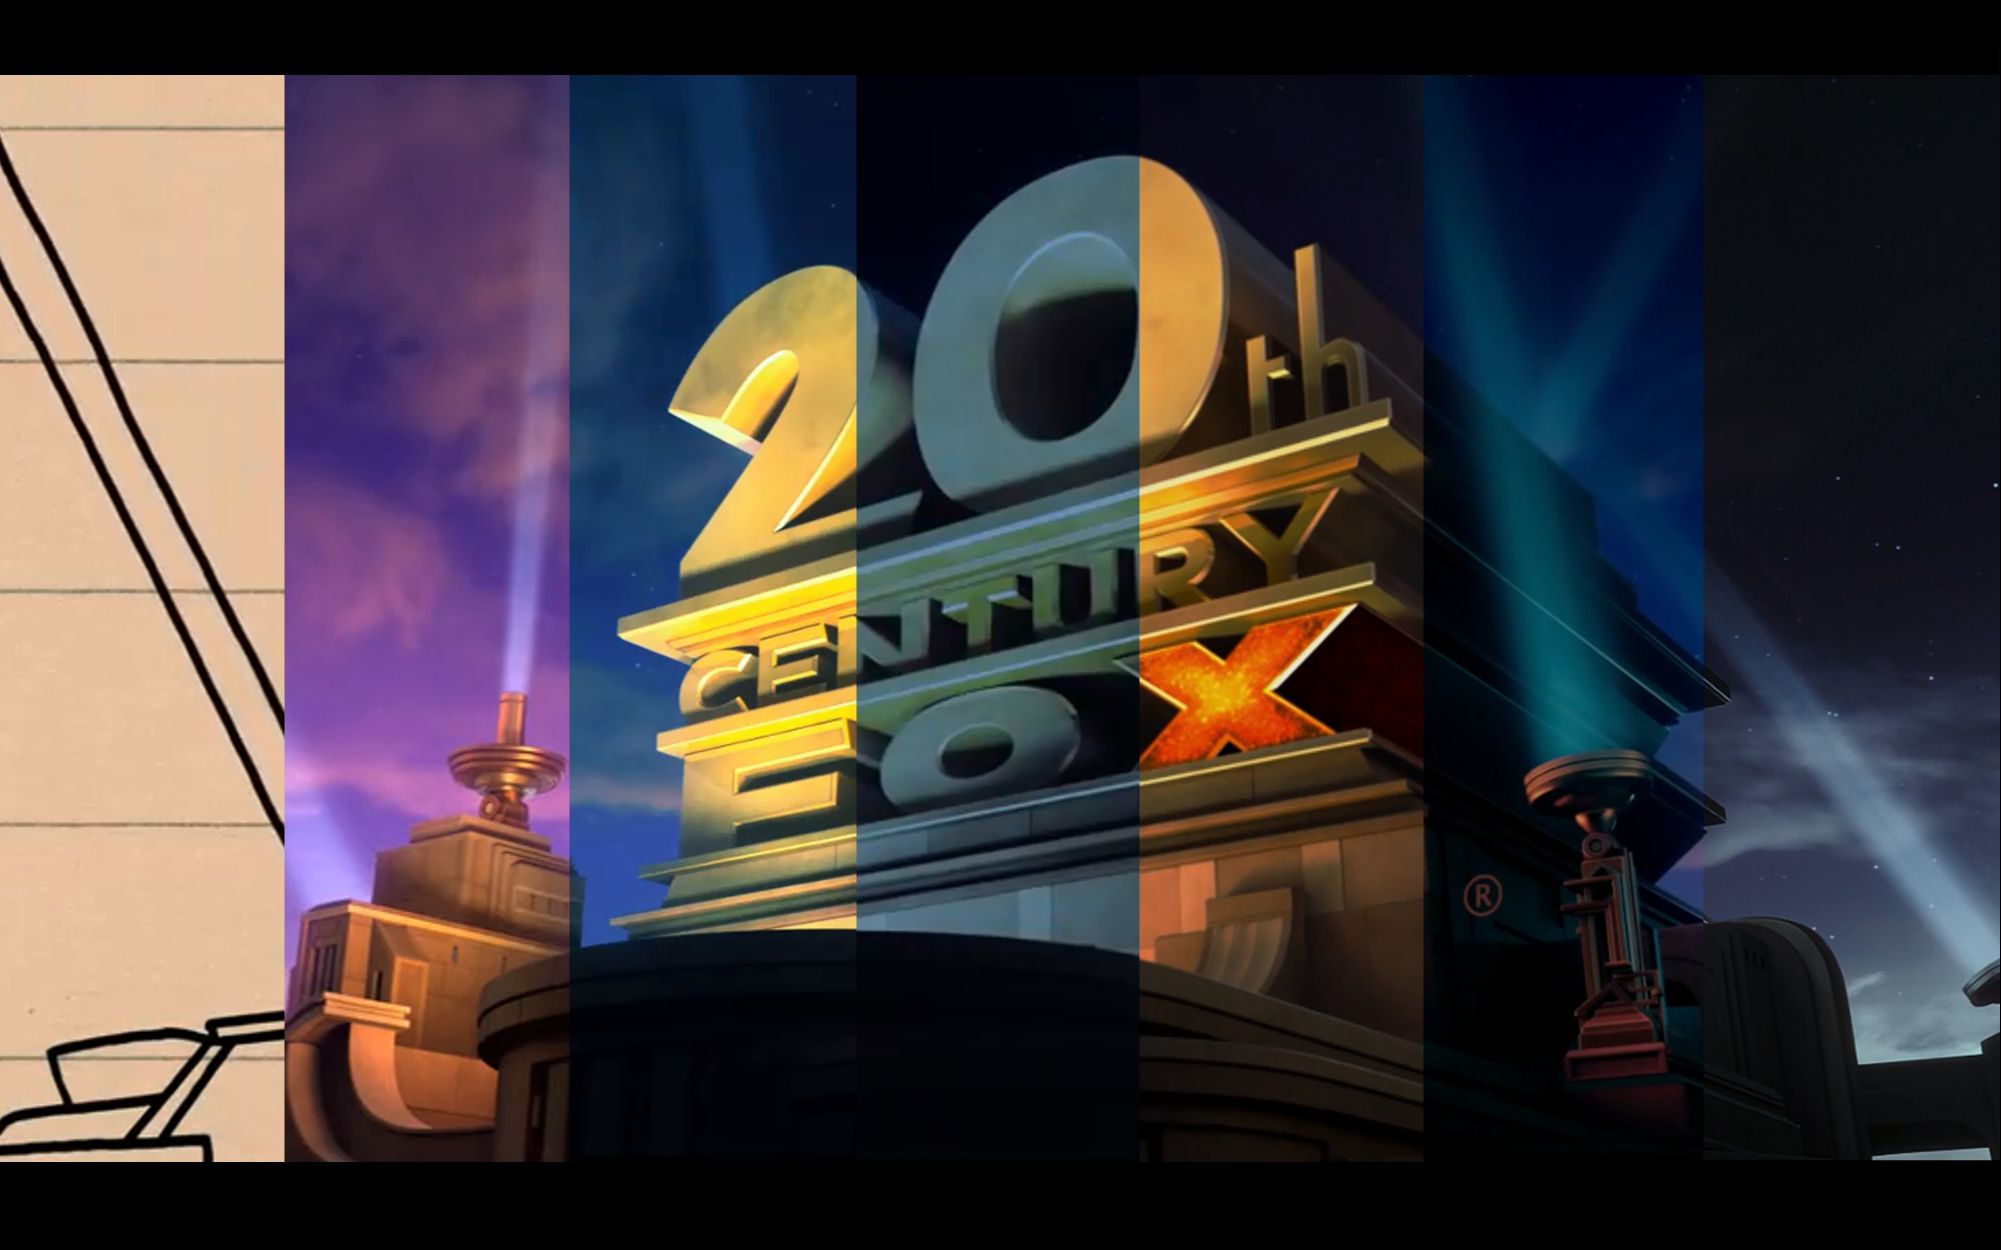 二十世纪福斯影业片头logo变体合集19902020持续更新中